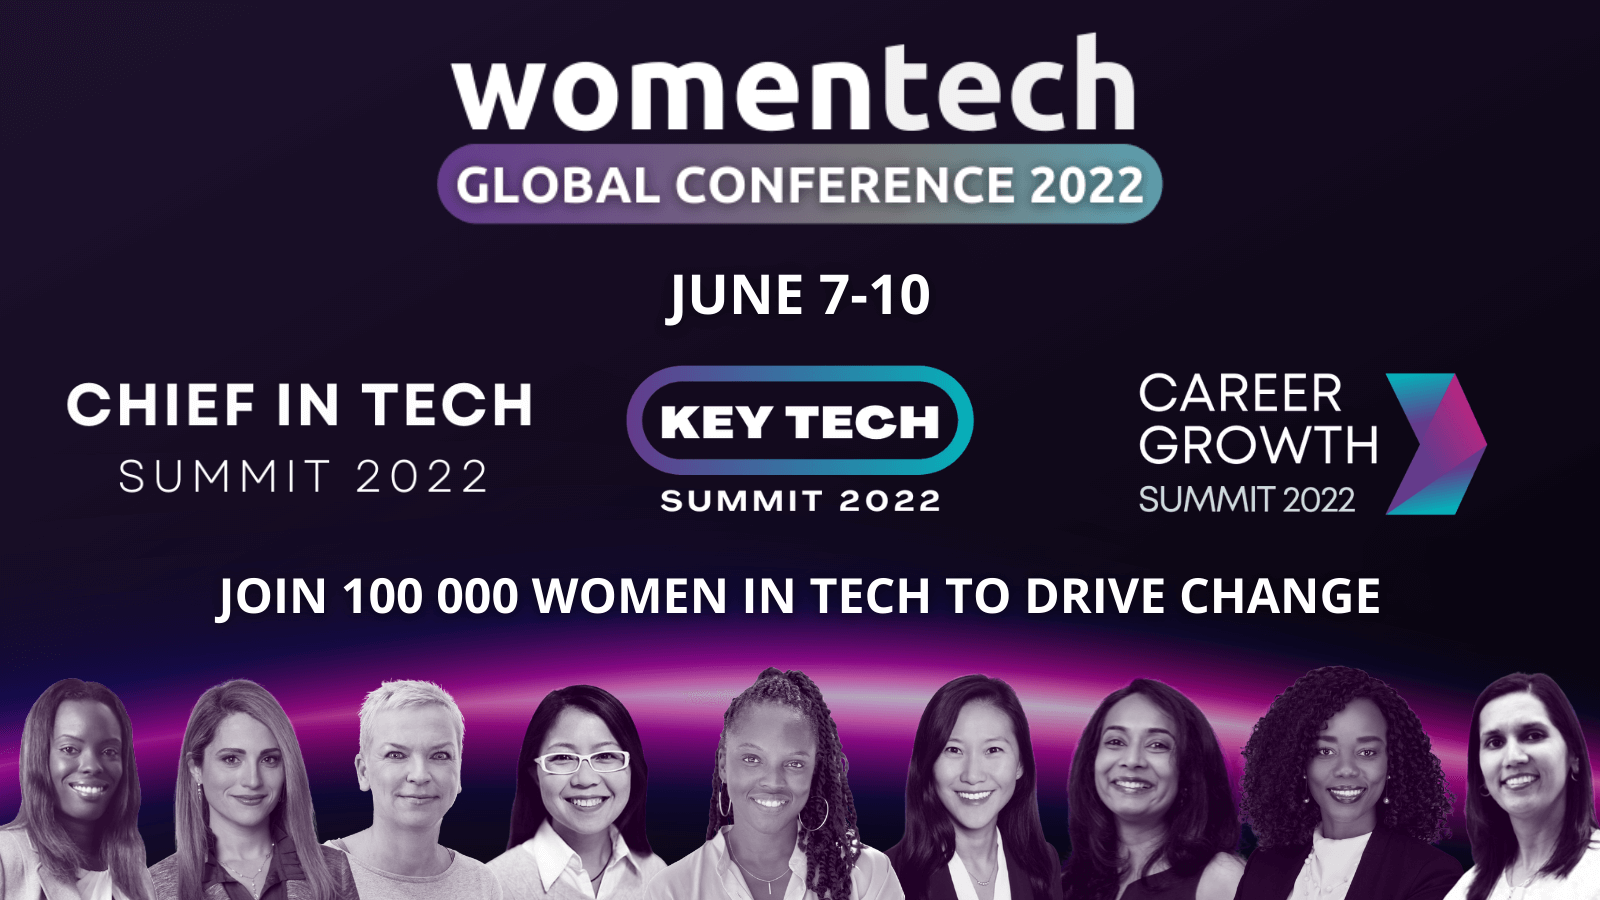 Women in Tech Conference 2022 Virtual & Global Women in Tech Network